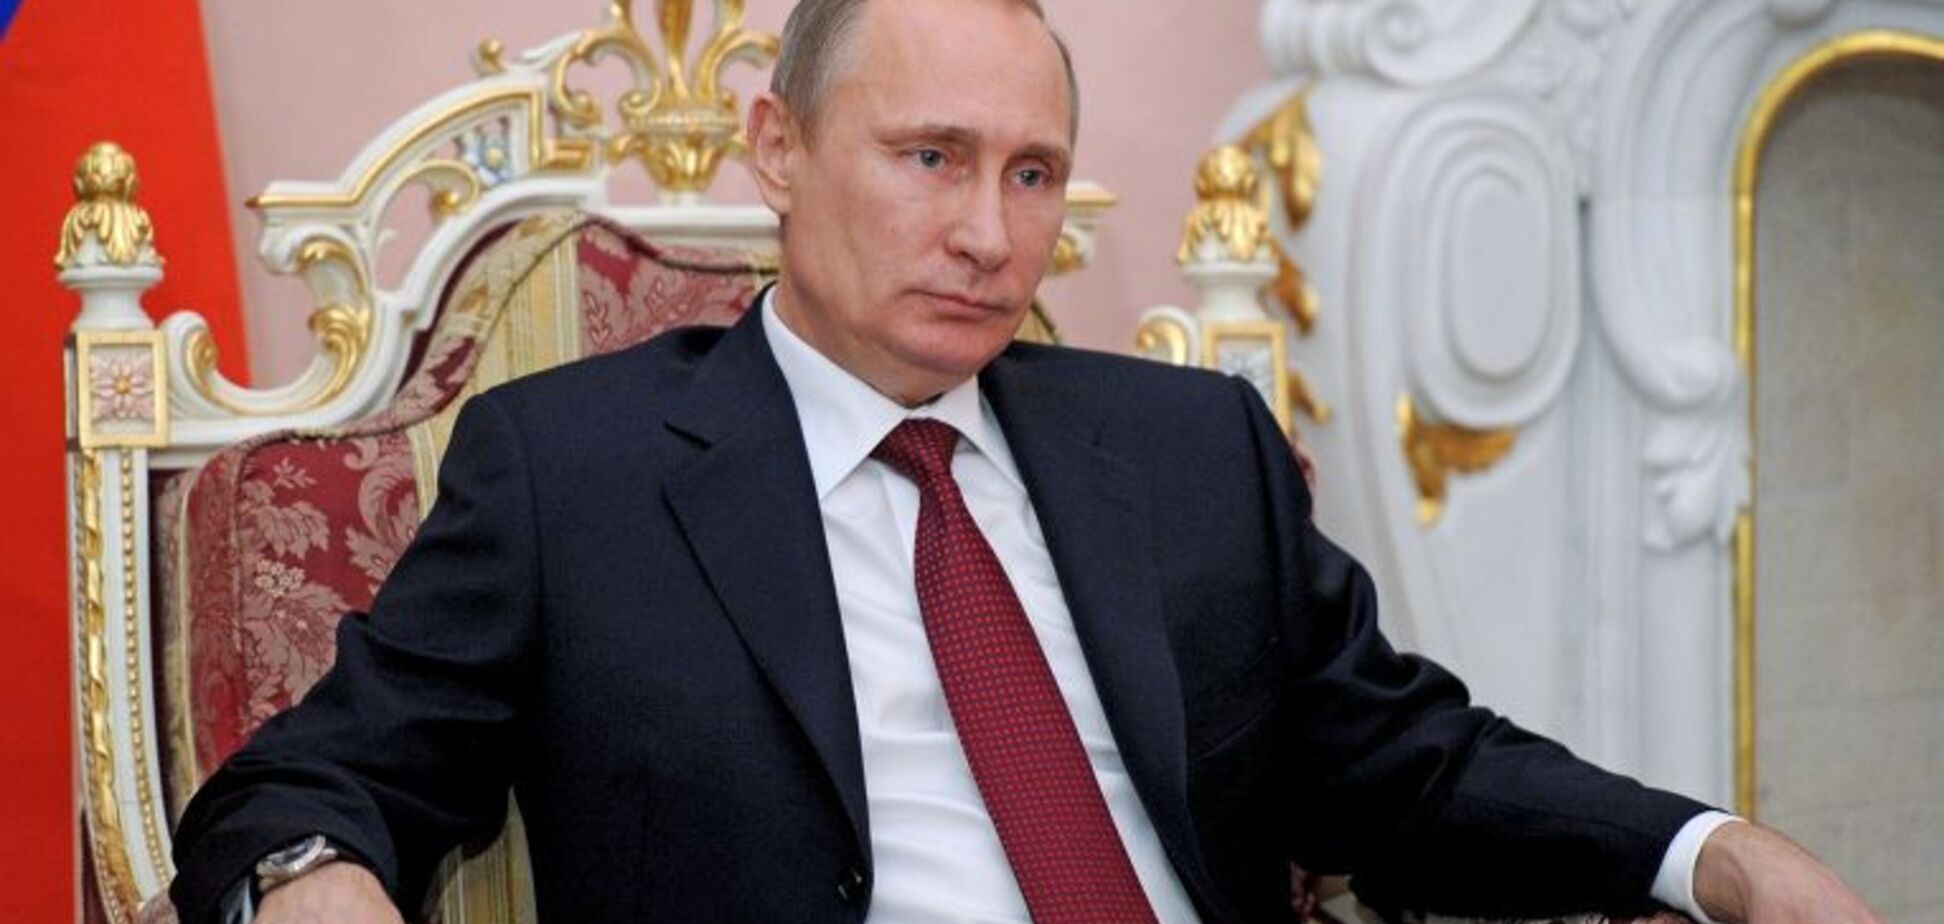 Його не скинуть - він піде сам: в Росії спрогнозували долю Путіна